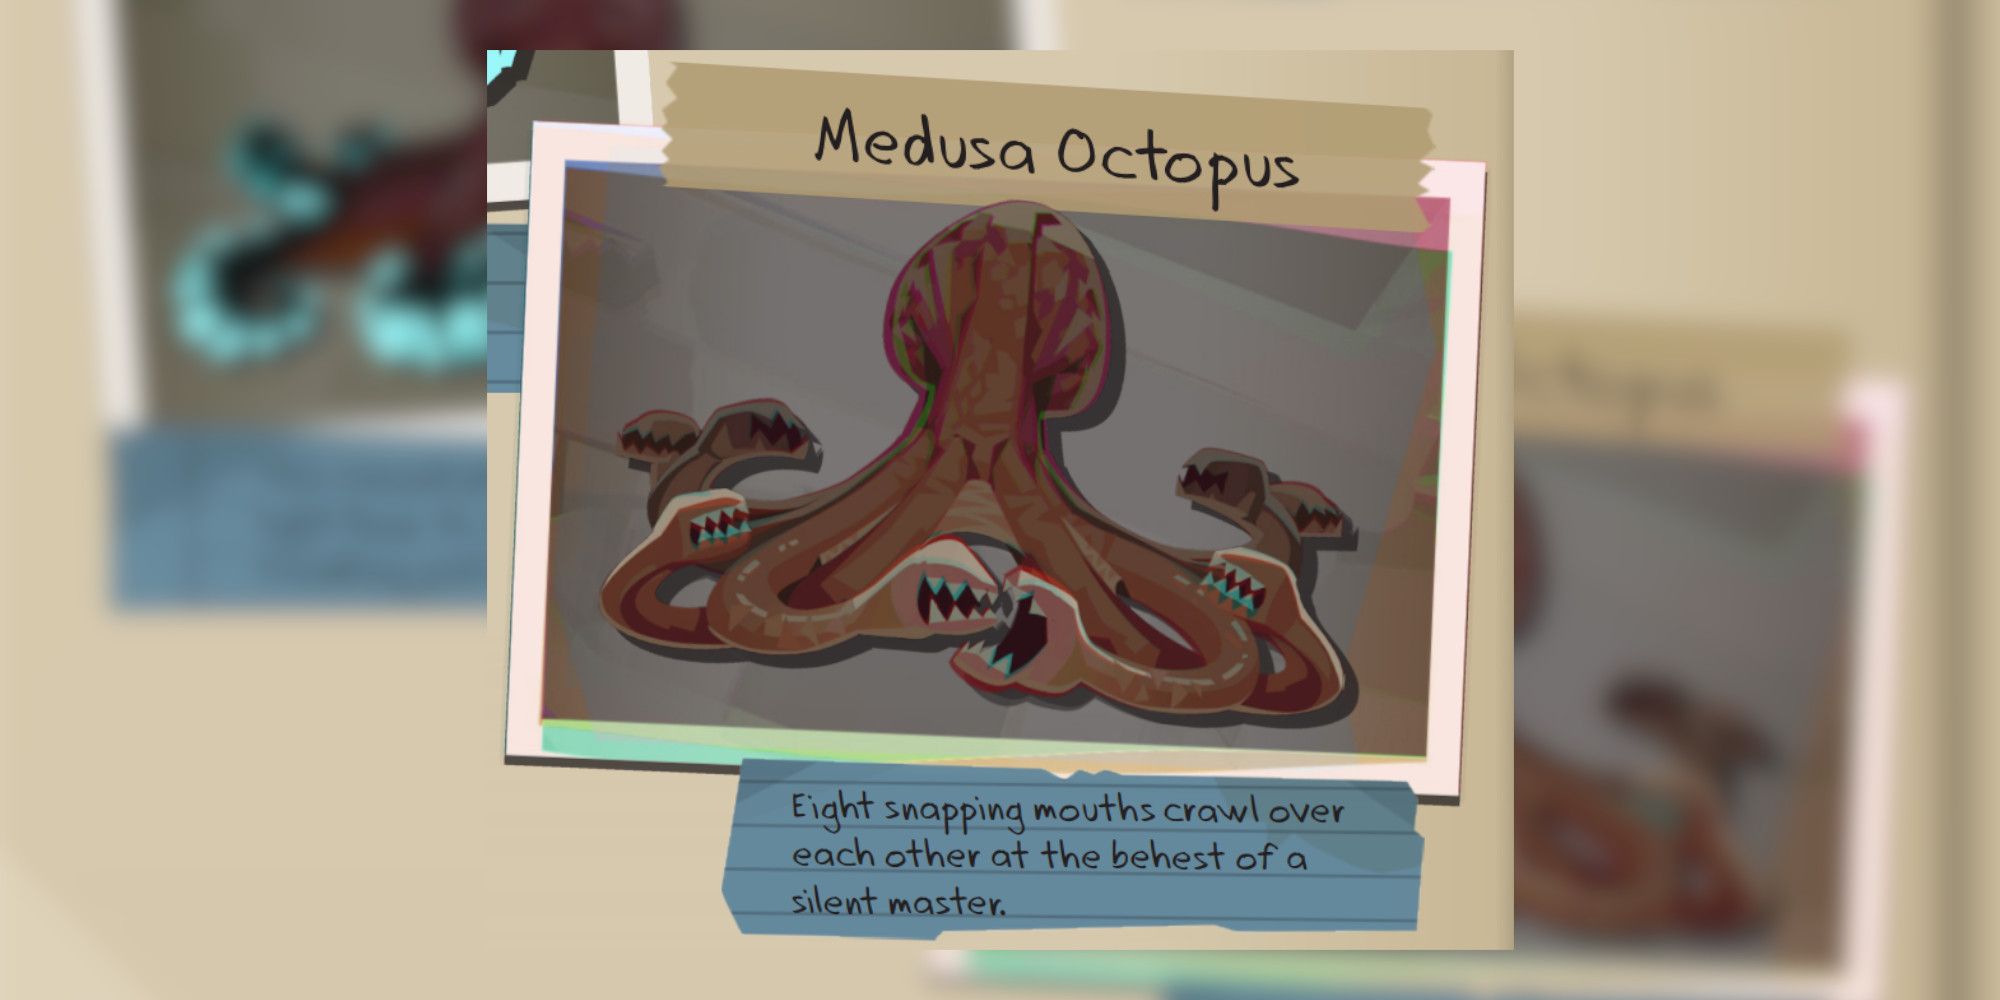 Dredge Medusa Octopus